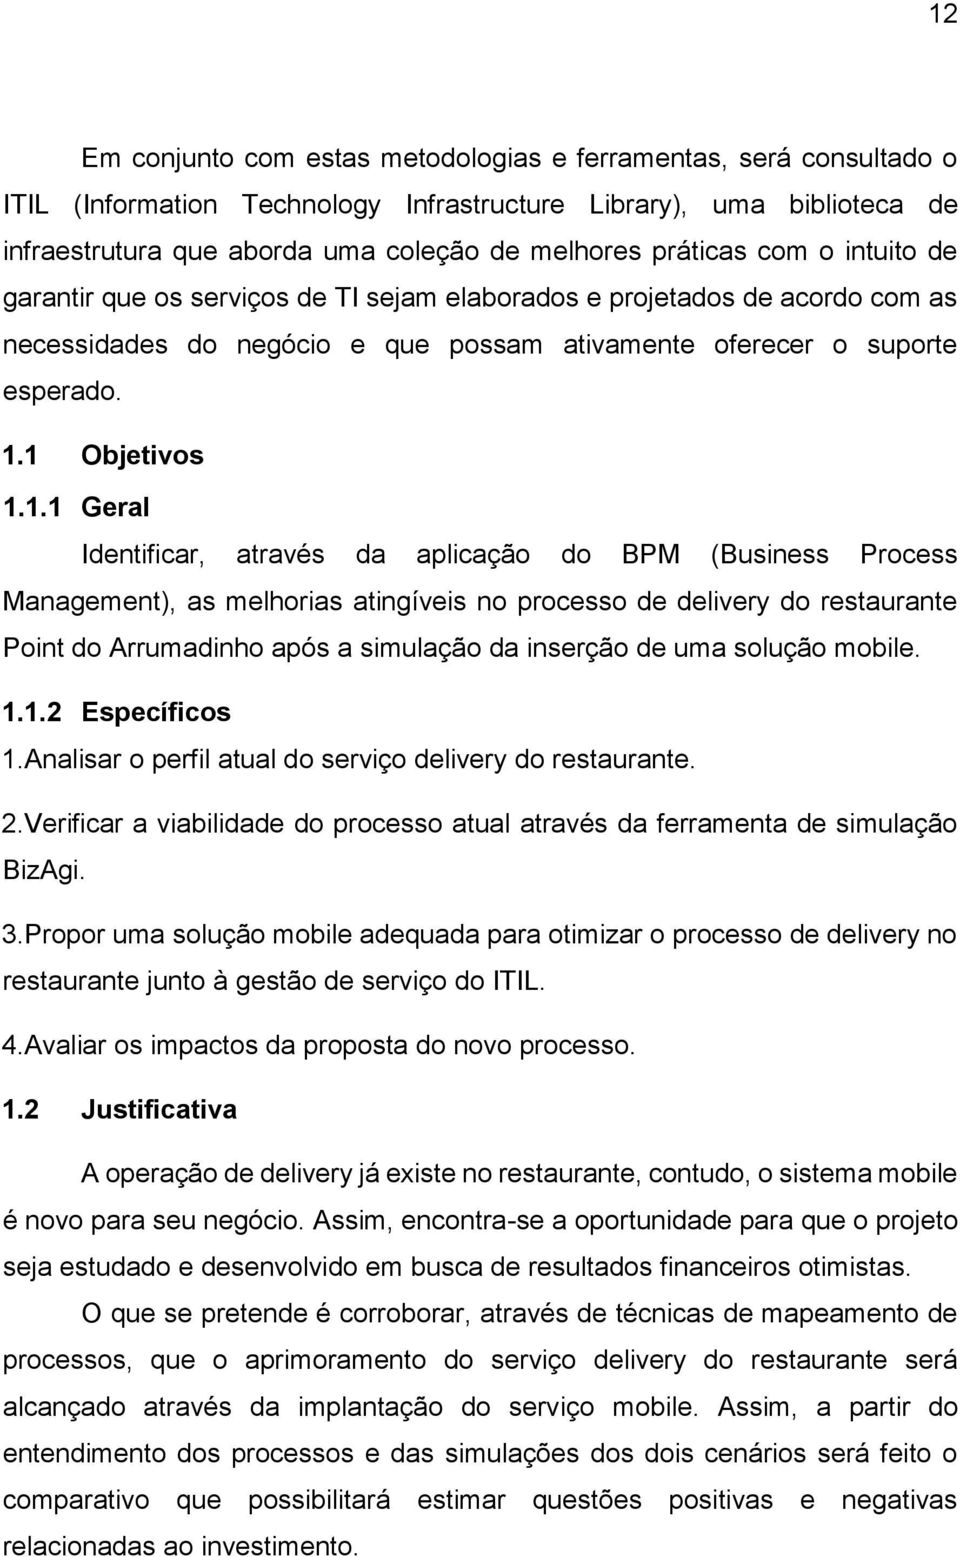 1 Objetivos 1.1.1 Geral Identificar, através da aplicação do BPM (Business Process Management), as melhorias atingíveis no processo de delivery do restaurante Point do Arrumadinho após a simulação da